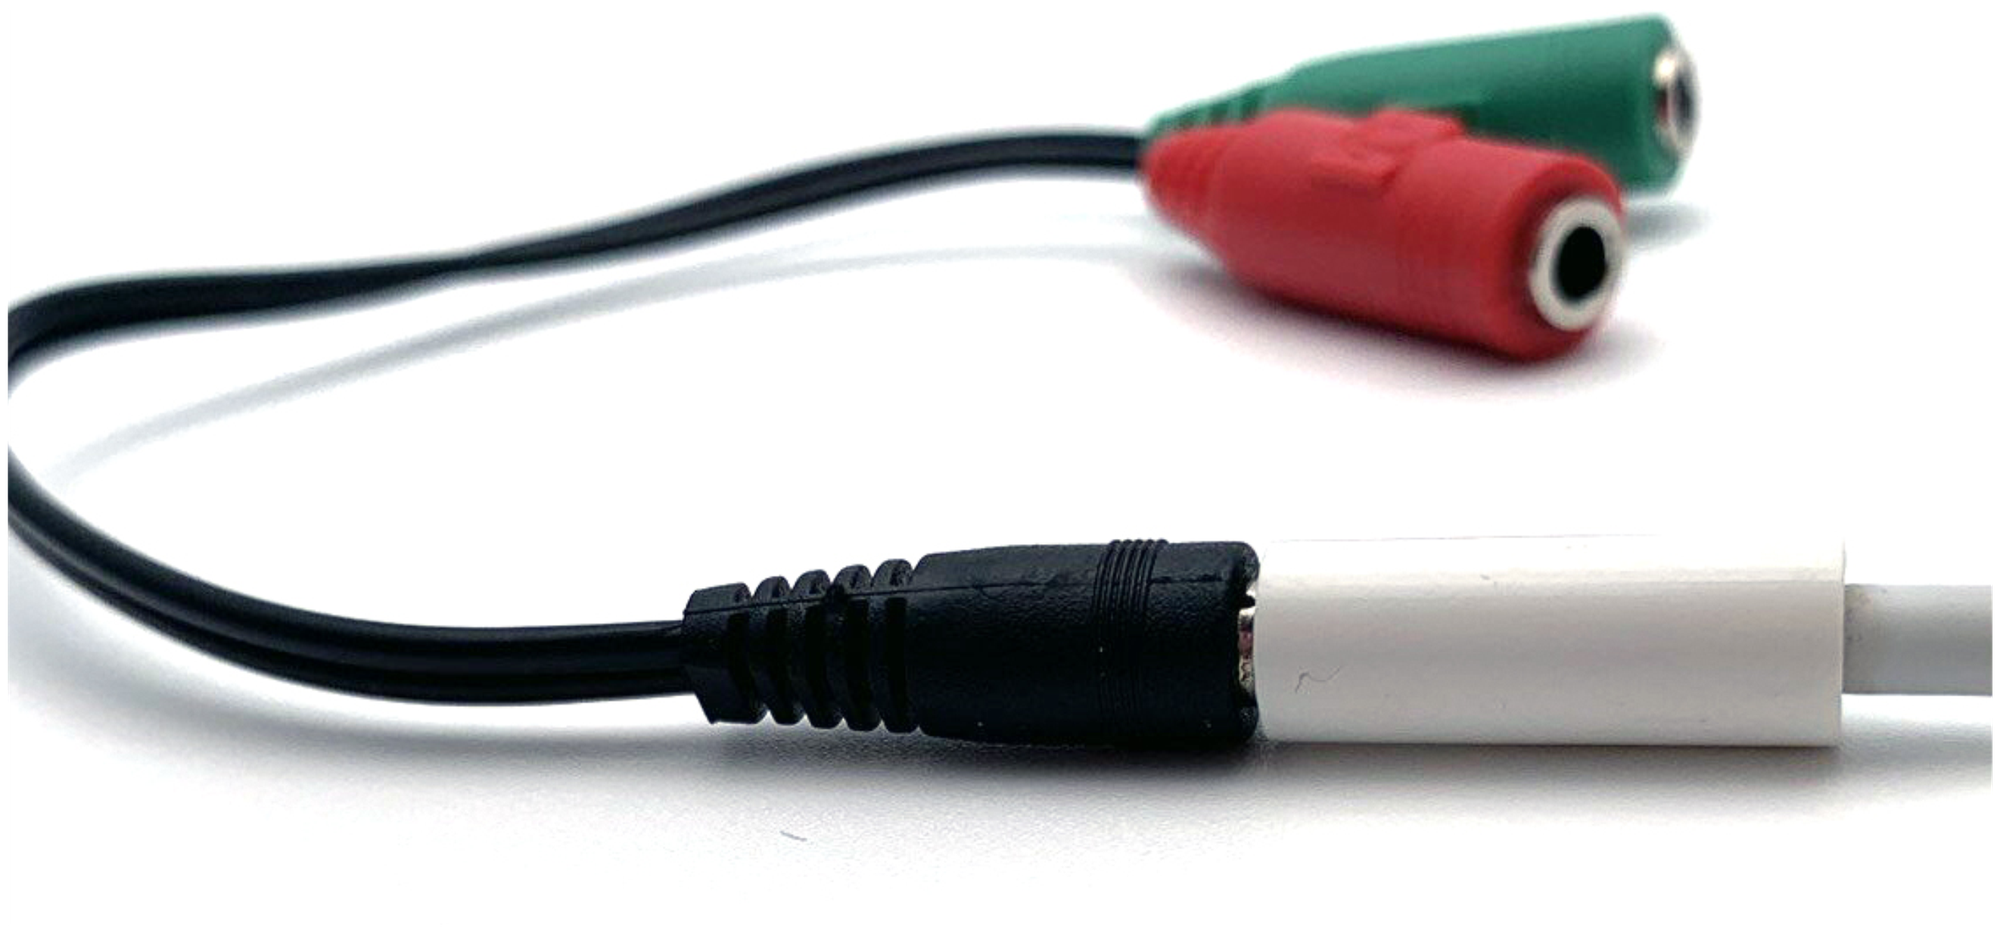 Переходник-разветвитель для наушников с микрофоном Jack 3.5 mm Masak / кабель для гарнитуры / аудио переходник,